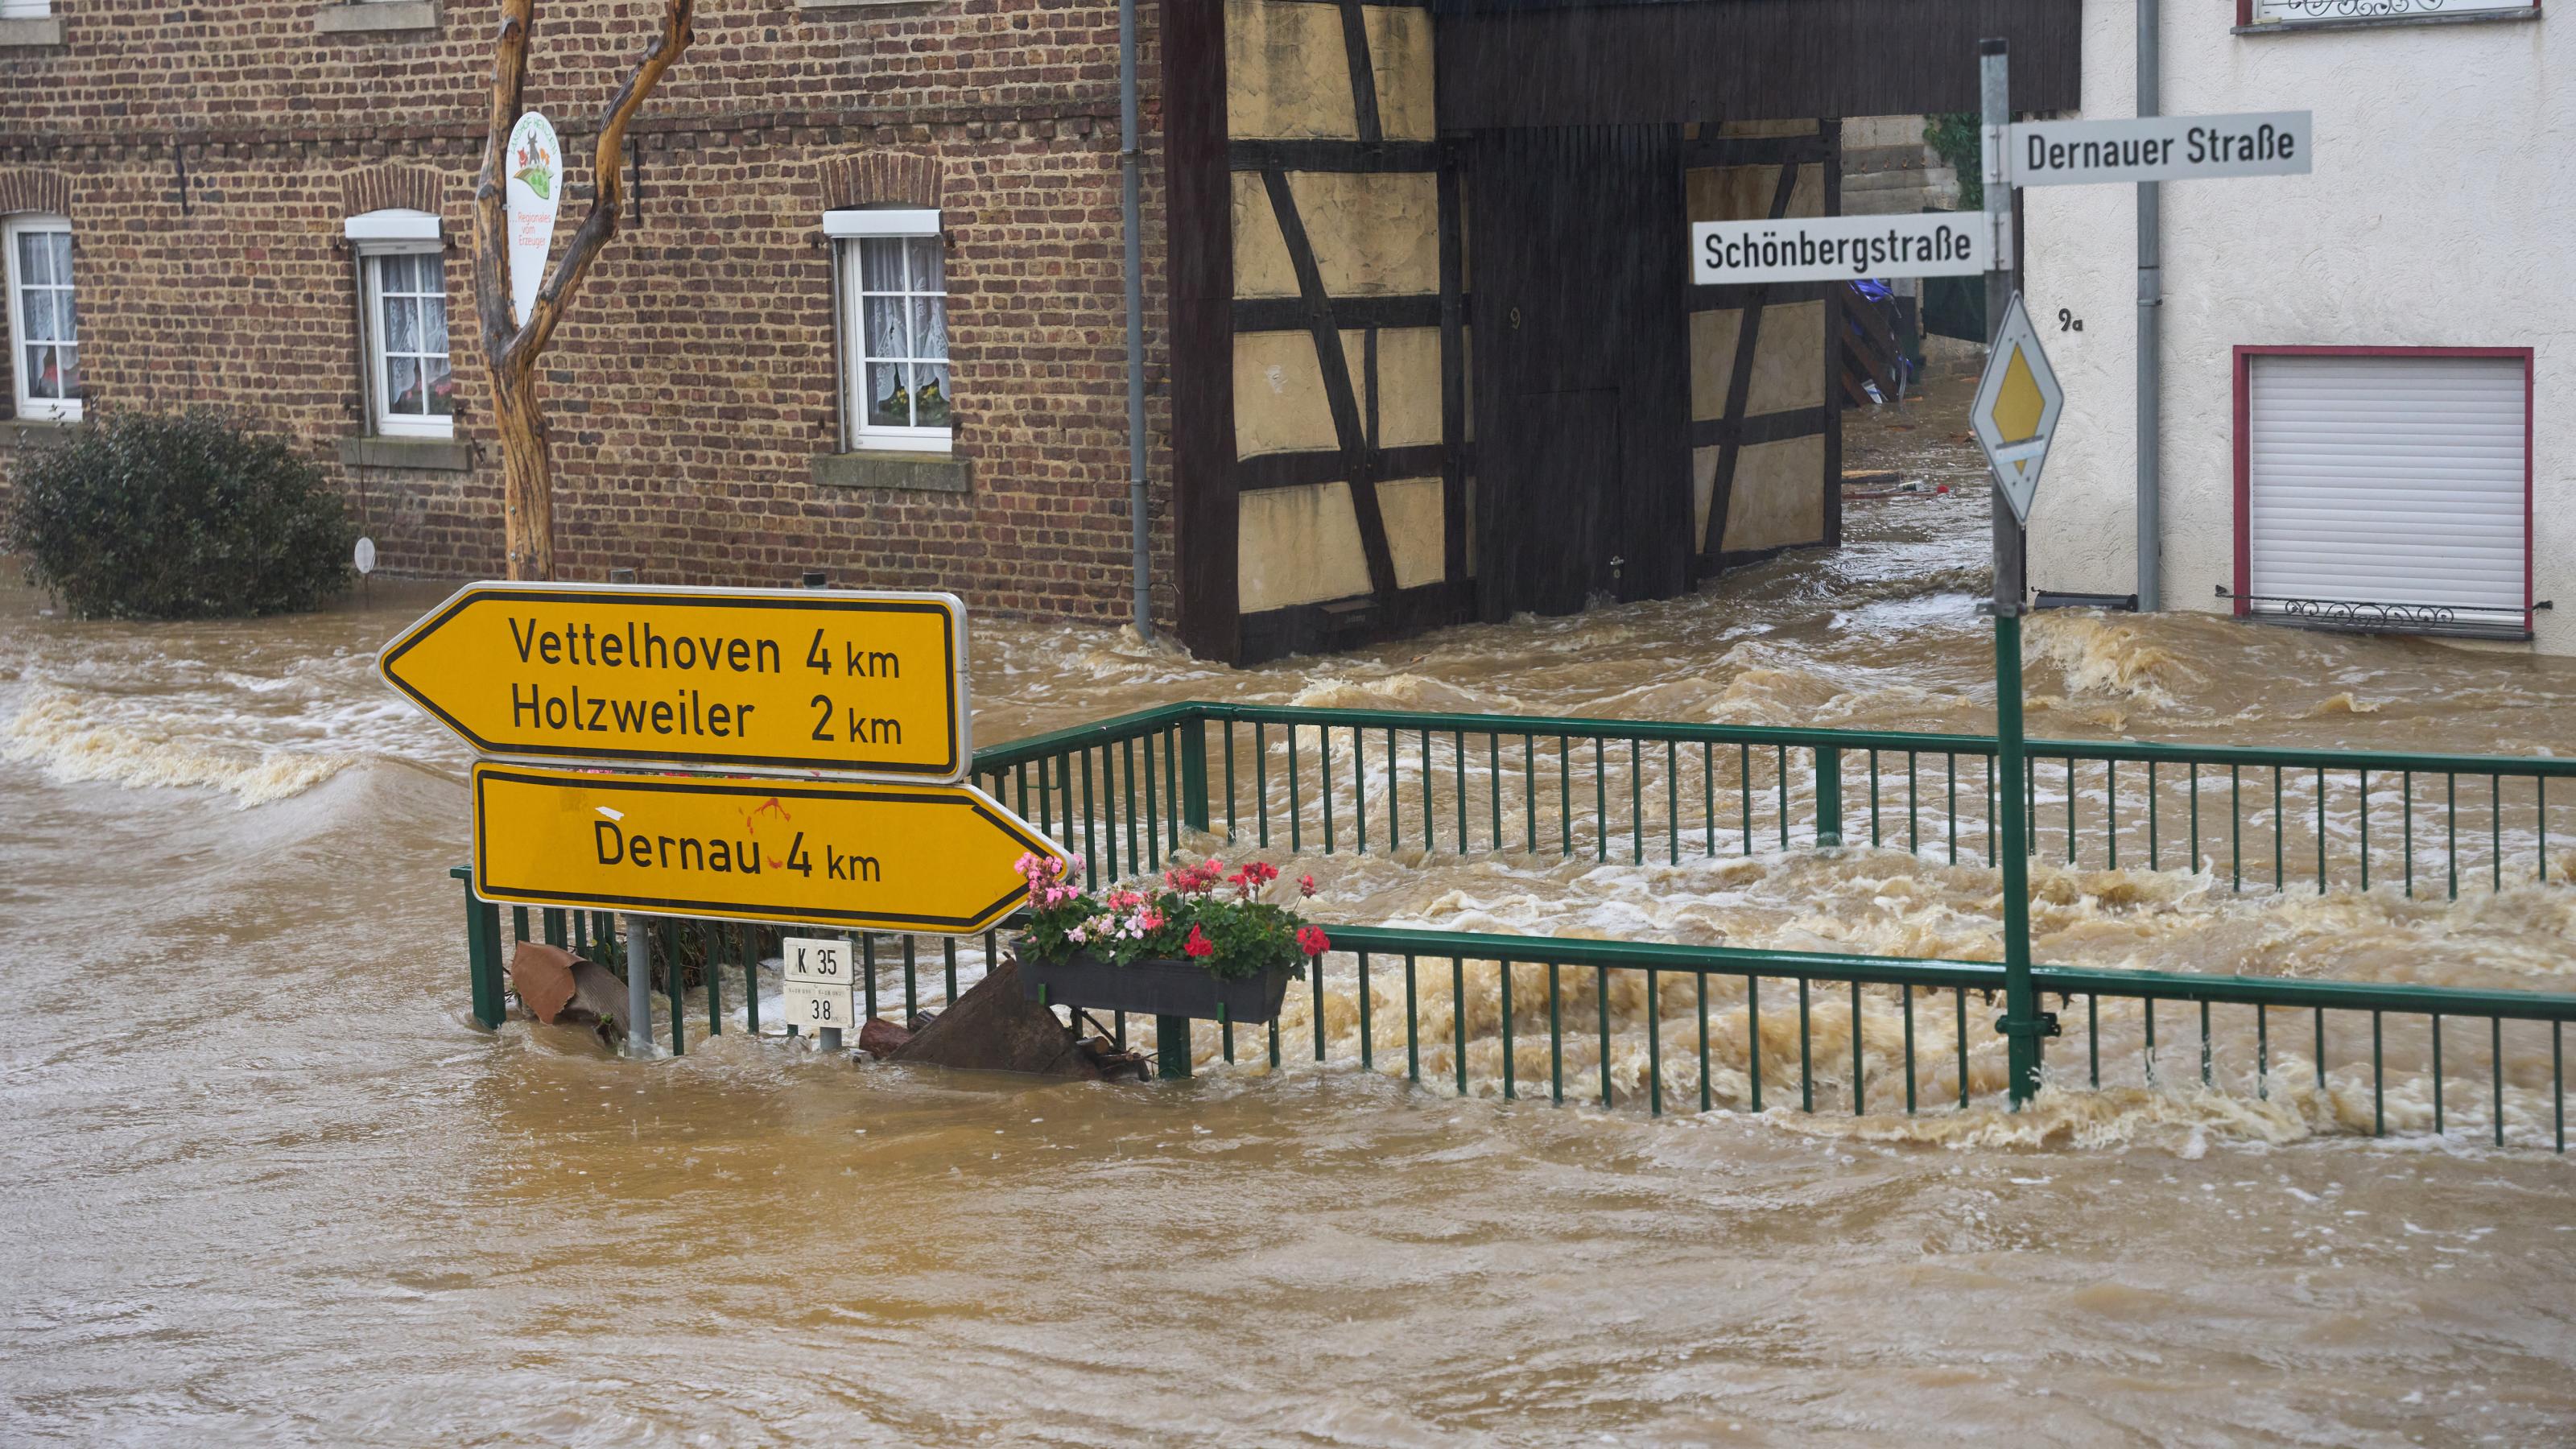 Die Straßen von Esch (Kreis Ahrweiler) haben sich in reißende Ströme verwandelt. Extreme Niederschläge, wie es sie selten gab, haben in Rheinland-Pfalz und Nordrhein-Westfalen zahlreiche Ortschaften und Keller geflutet.